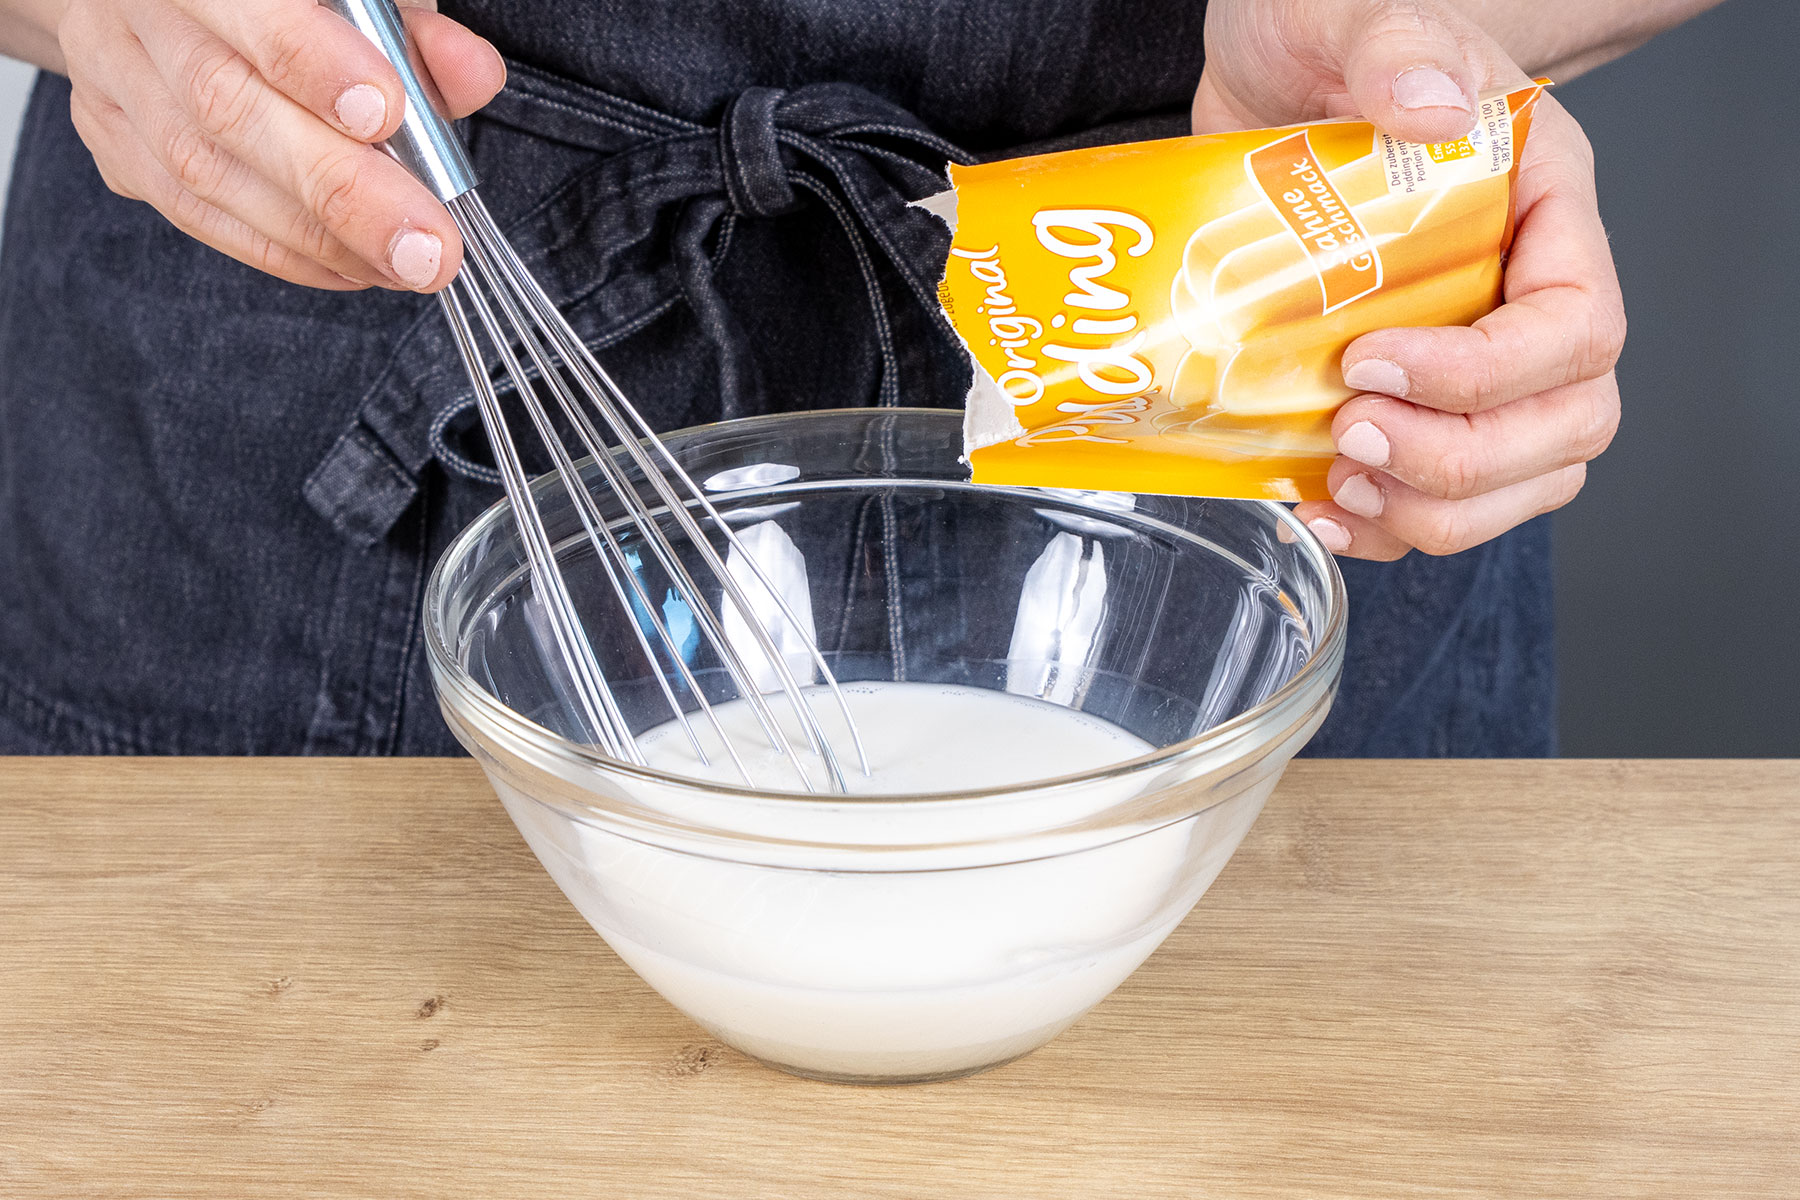 Puddingpulver zur Milch geben